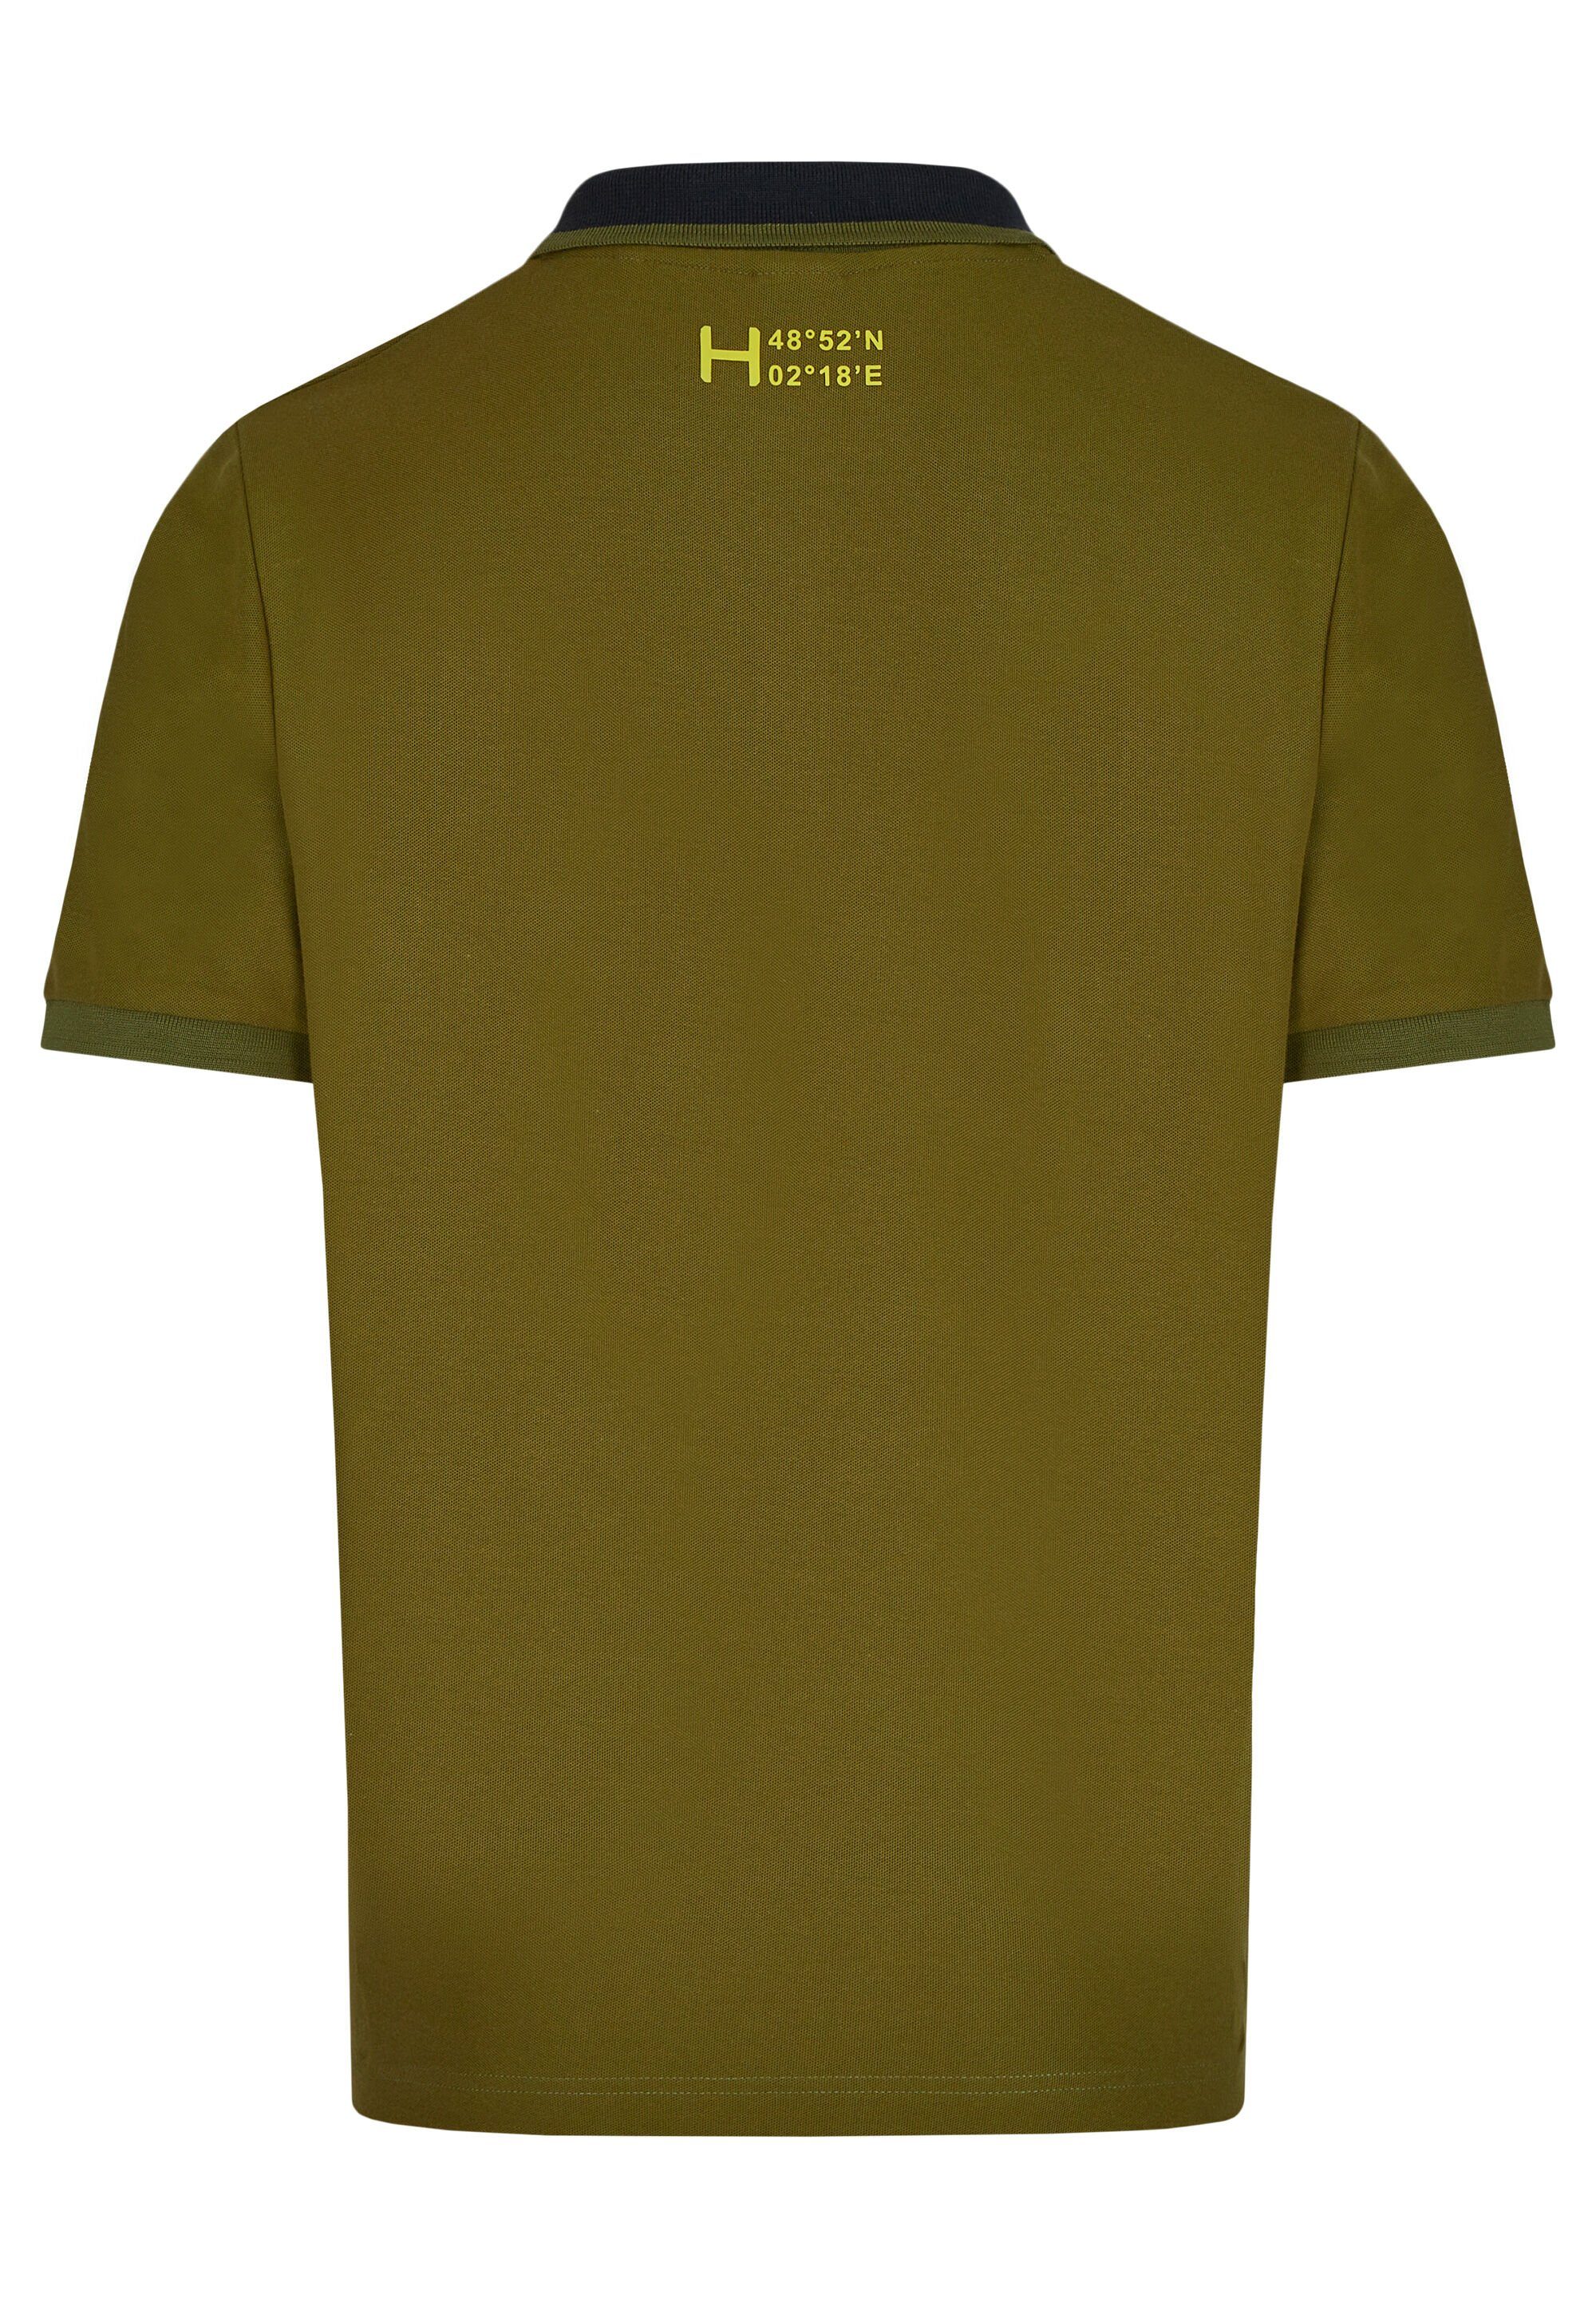 HECHTER PARIS Poloshirt green DH-XTECH